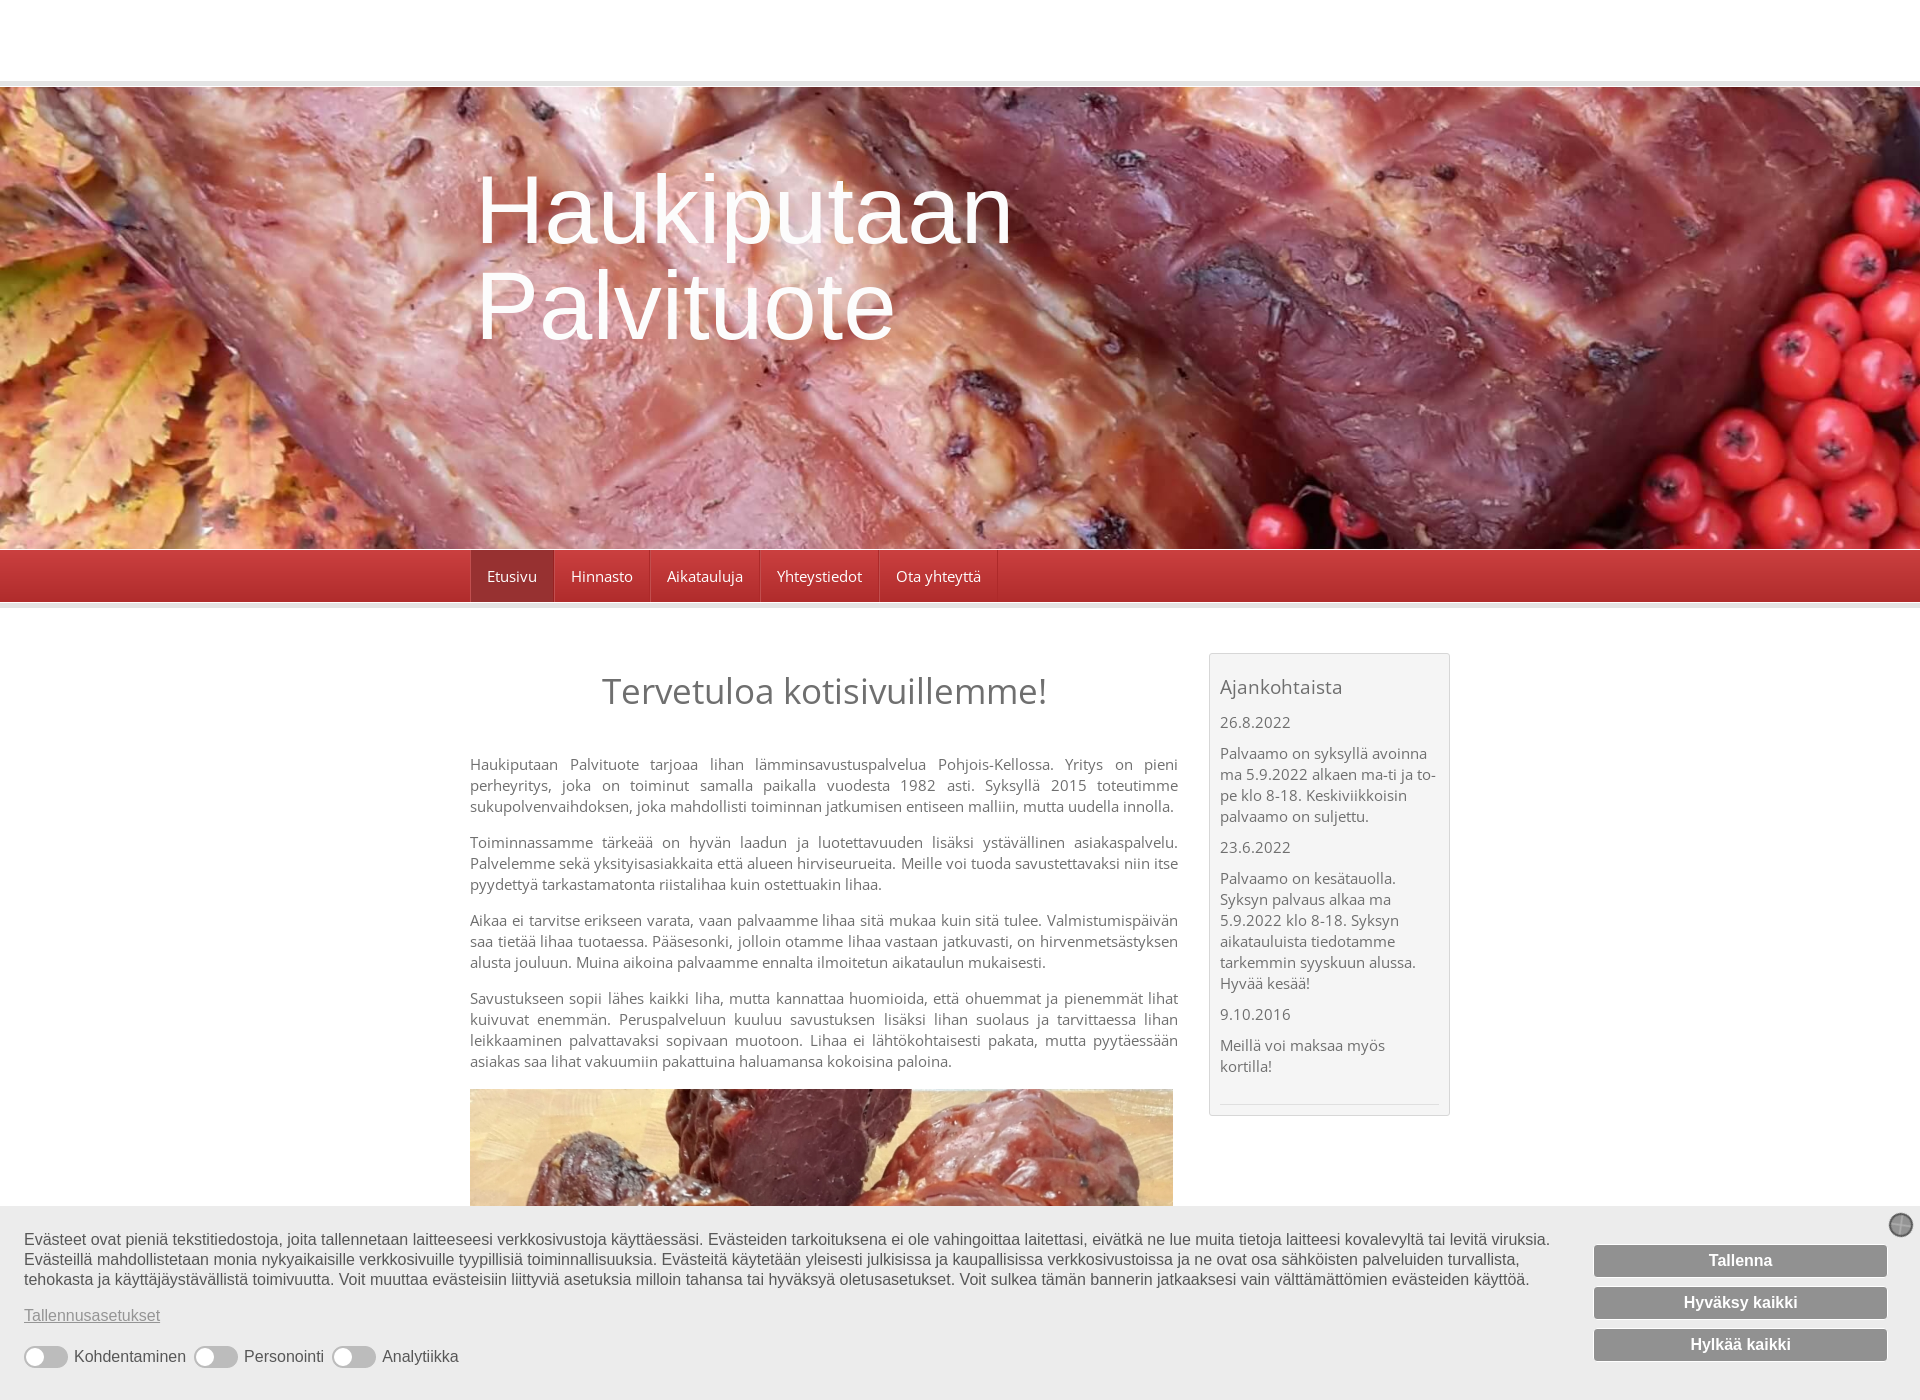 Skärmdump för haukiputaanpalvituote.fi